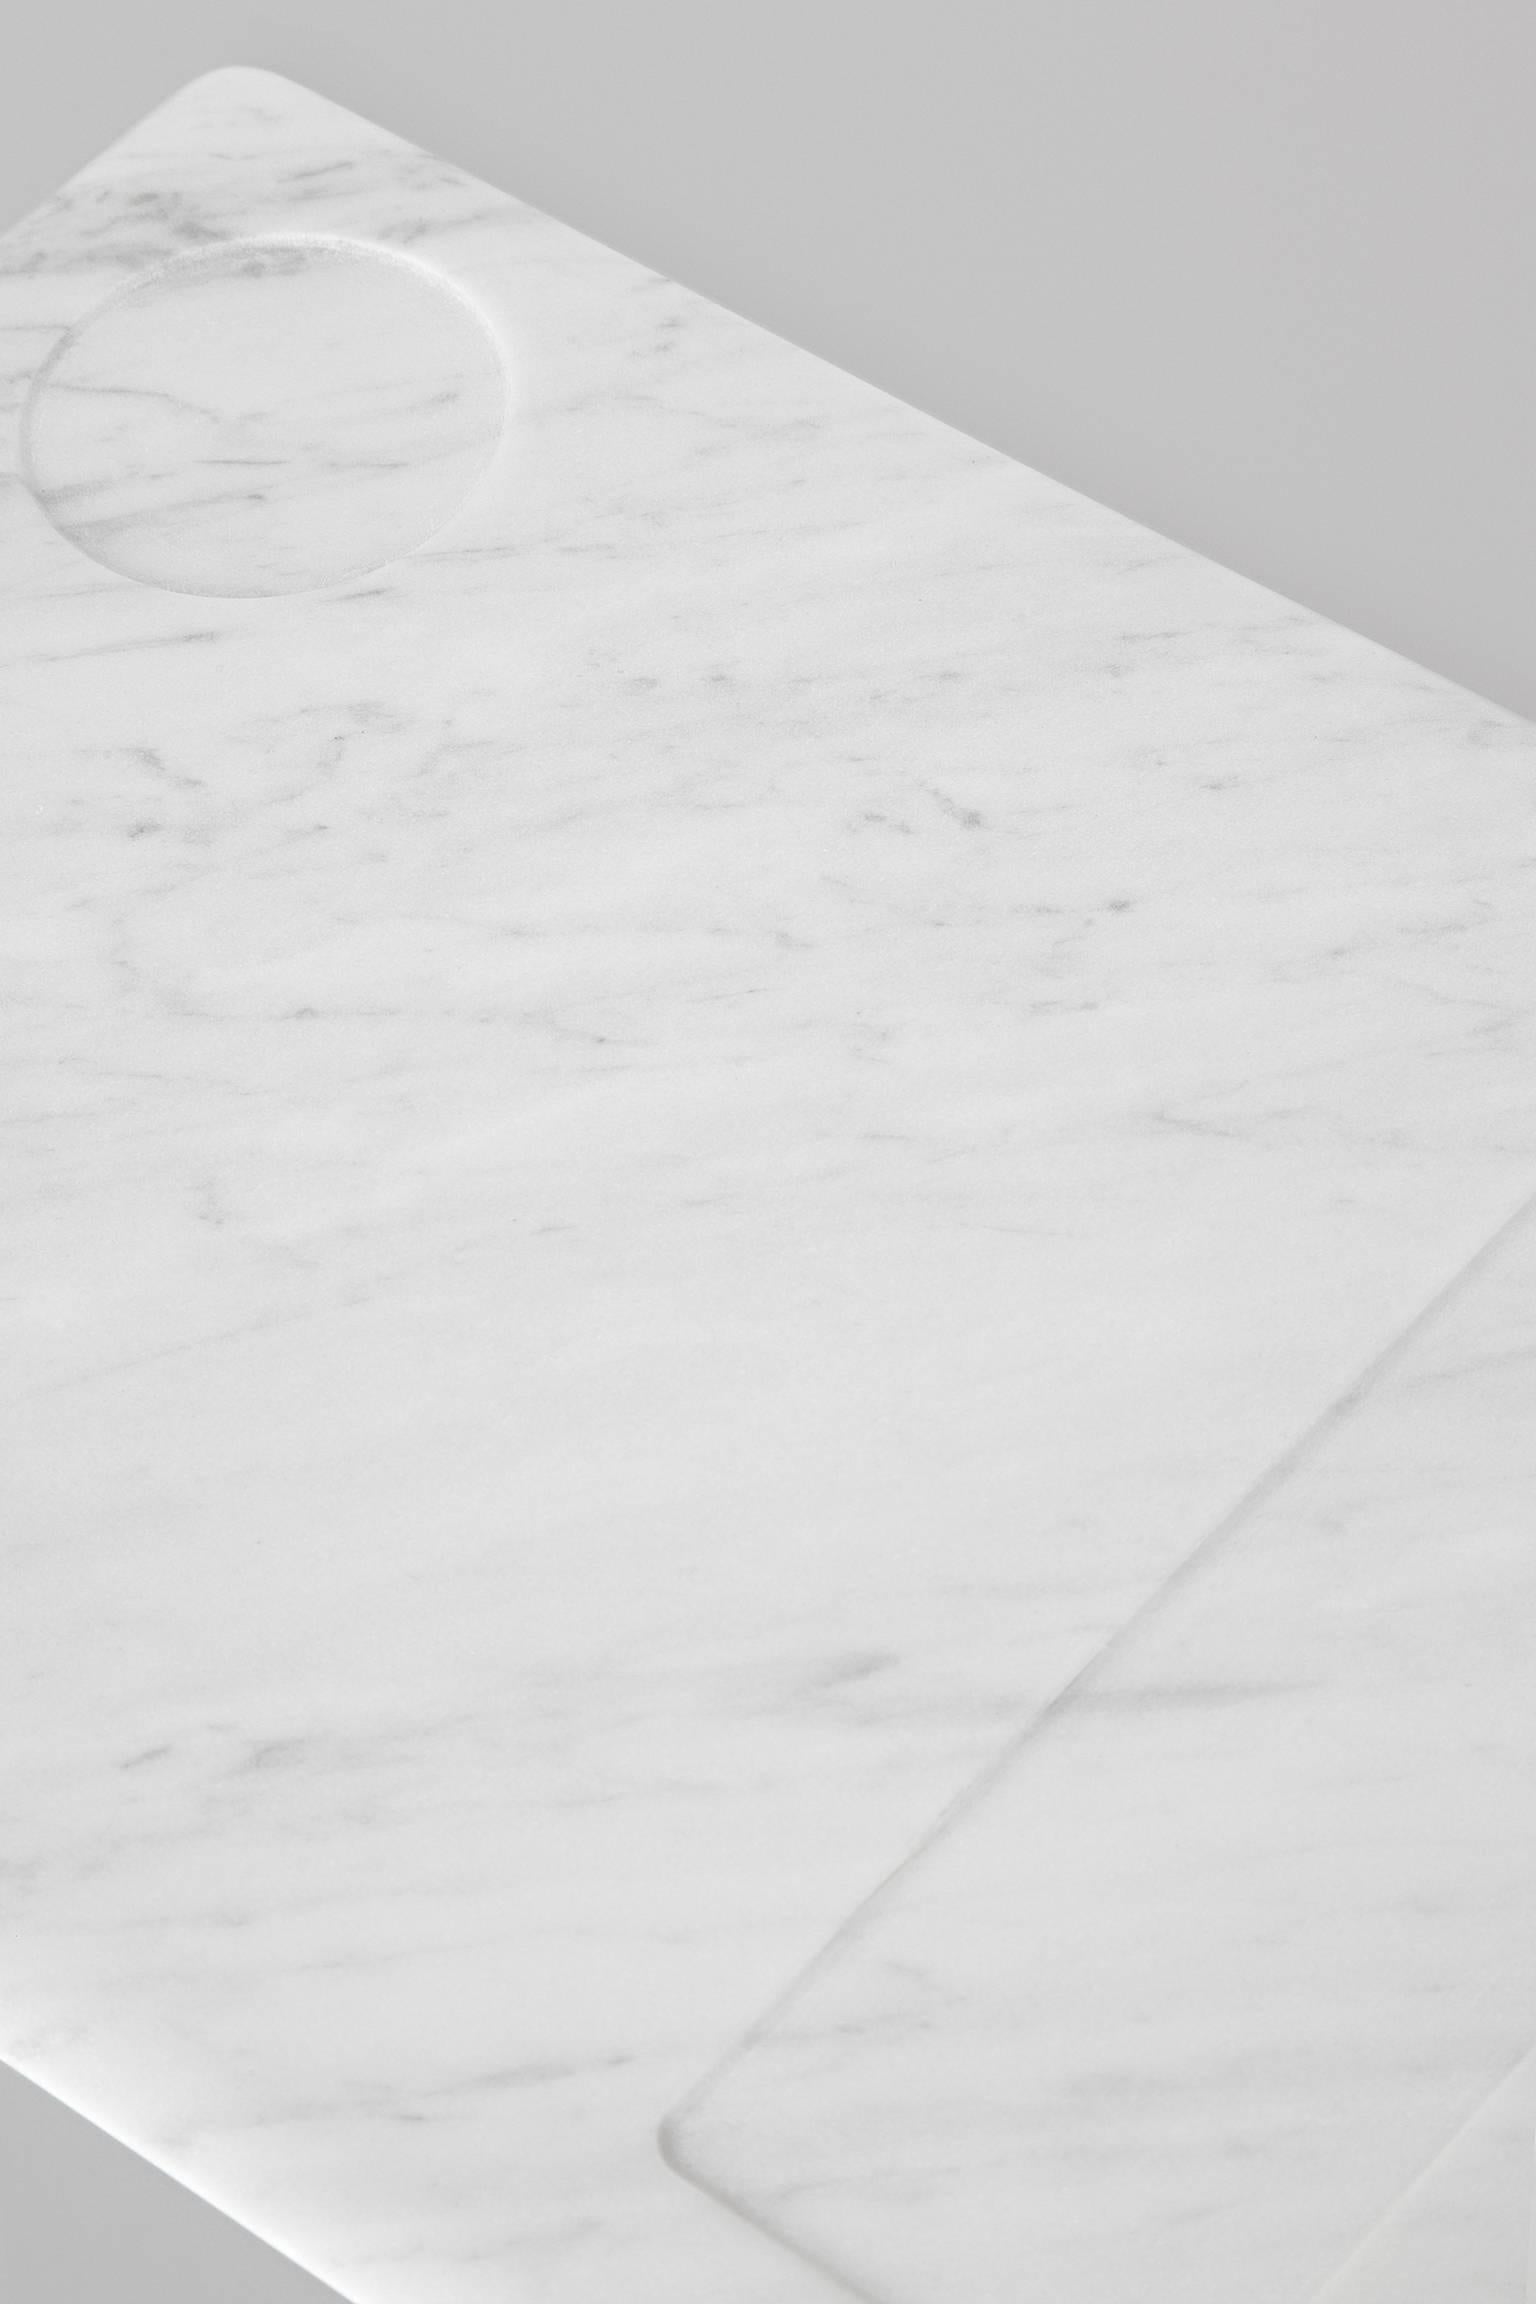 Tavoletta, conçu par Studioformat 

On pourrait même imaginer que le marbre lévite, s'envole vers les nuages, léger comme une plume, dans une parfaite adéquation chromatique. Studioformart réitère la légèreté du matériau élémentaire le plus noble,